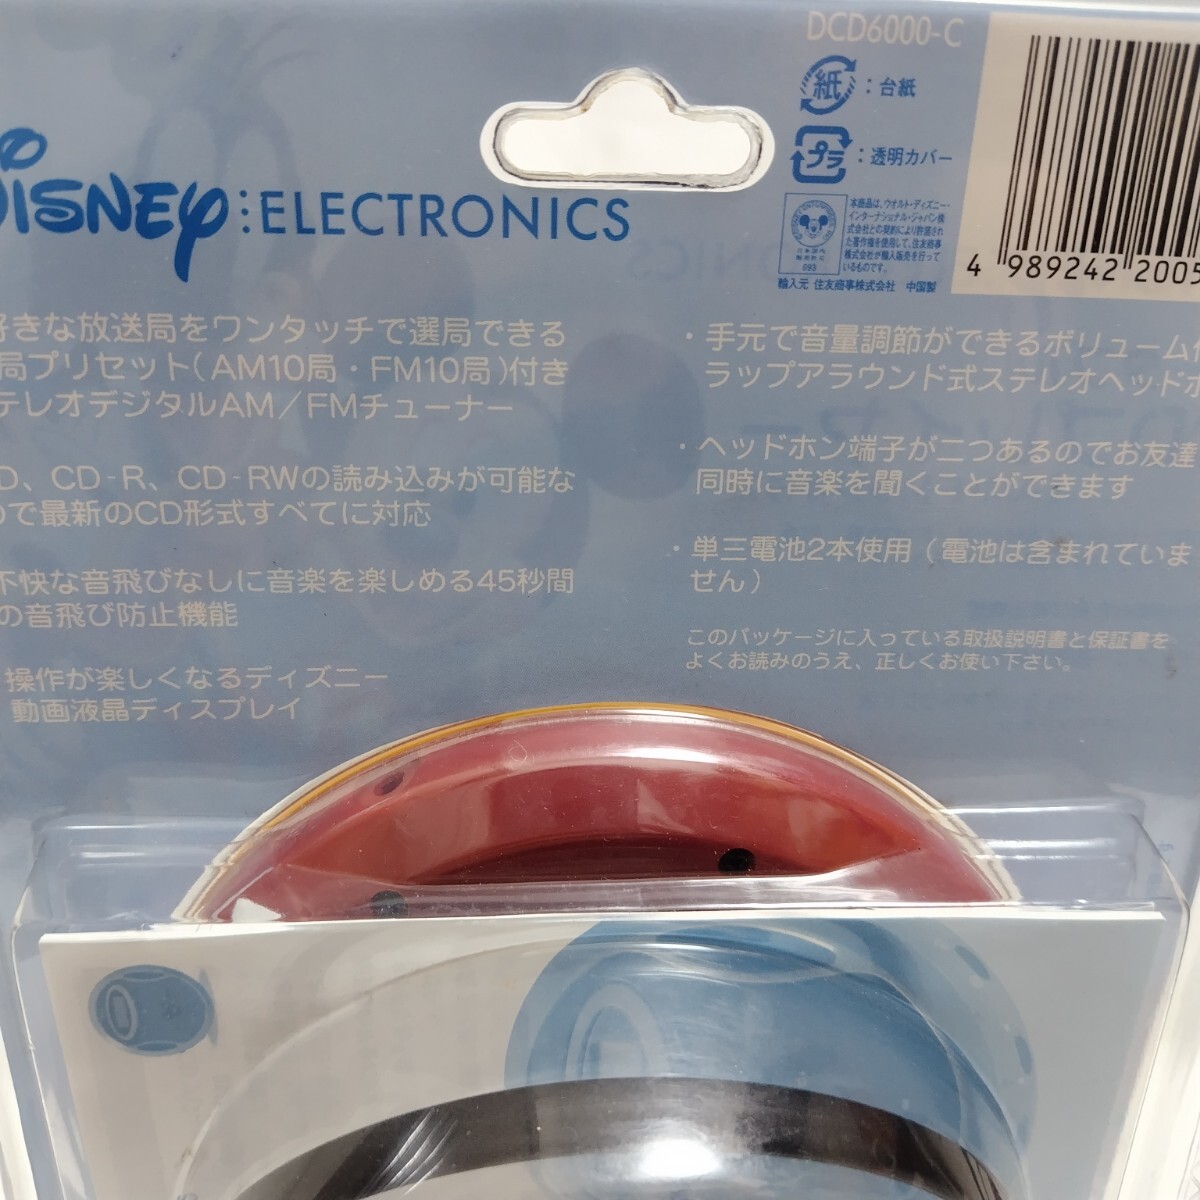 Disney electronics портативный CD плеер DCD6000-C AM.FM с радио нераспечатанный редкий предмет Mickey Mouse герой товары 